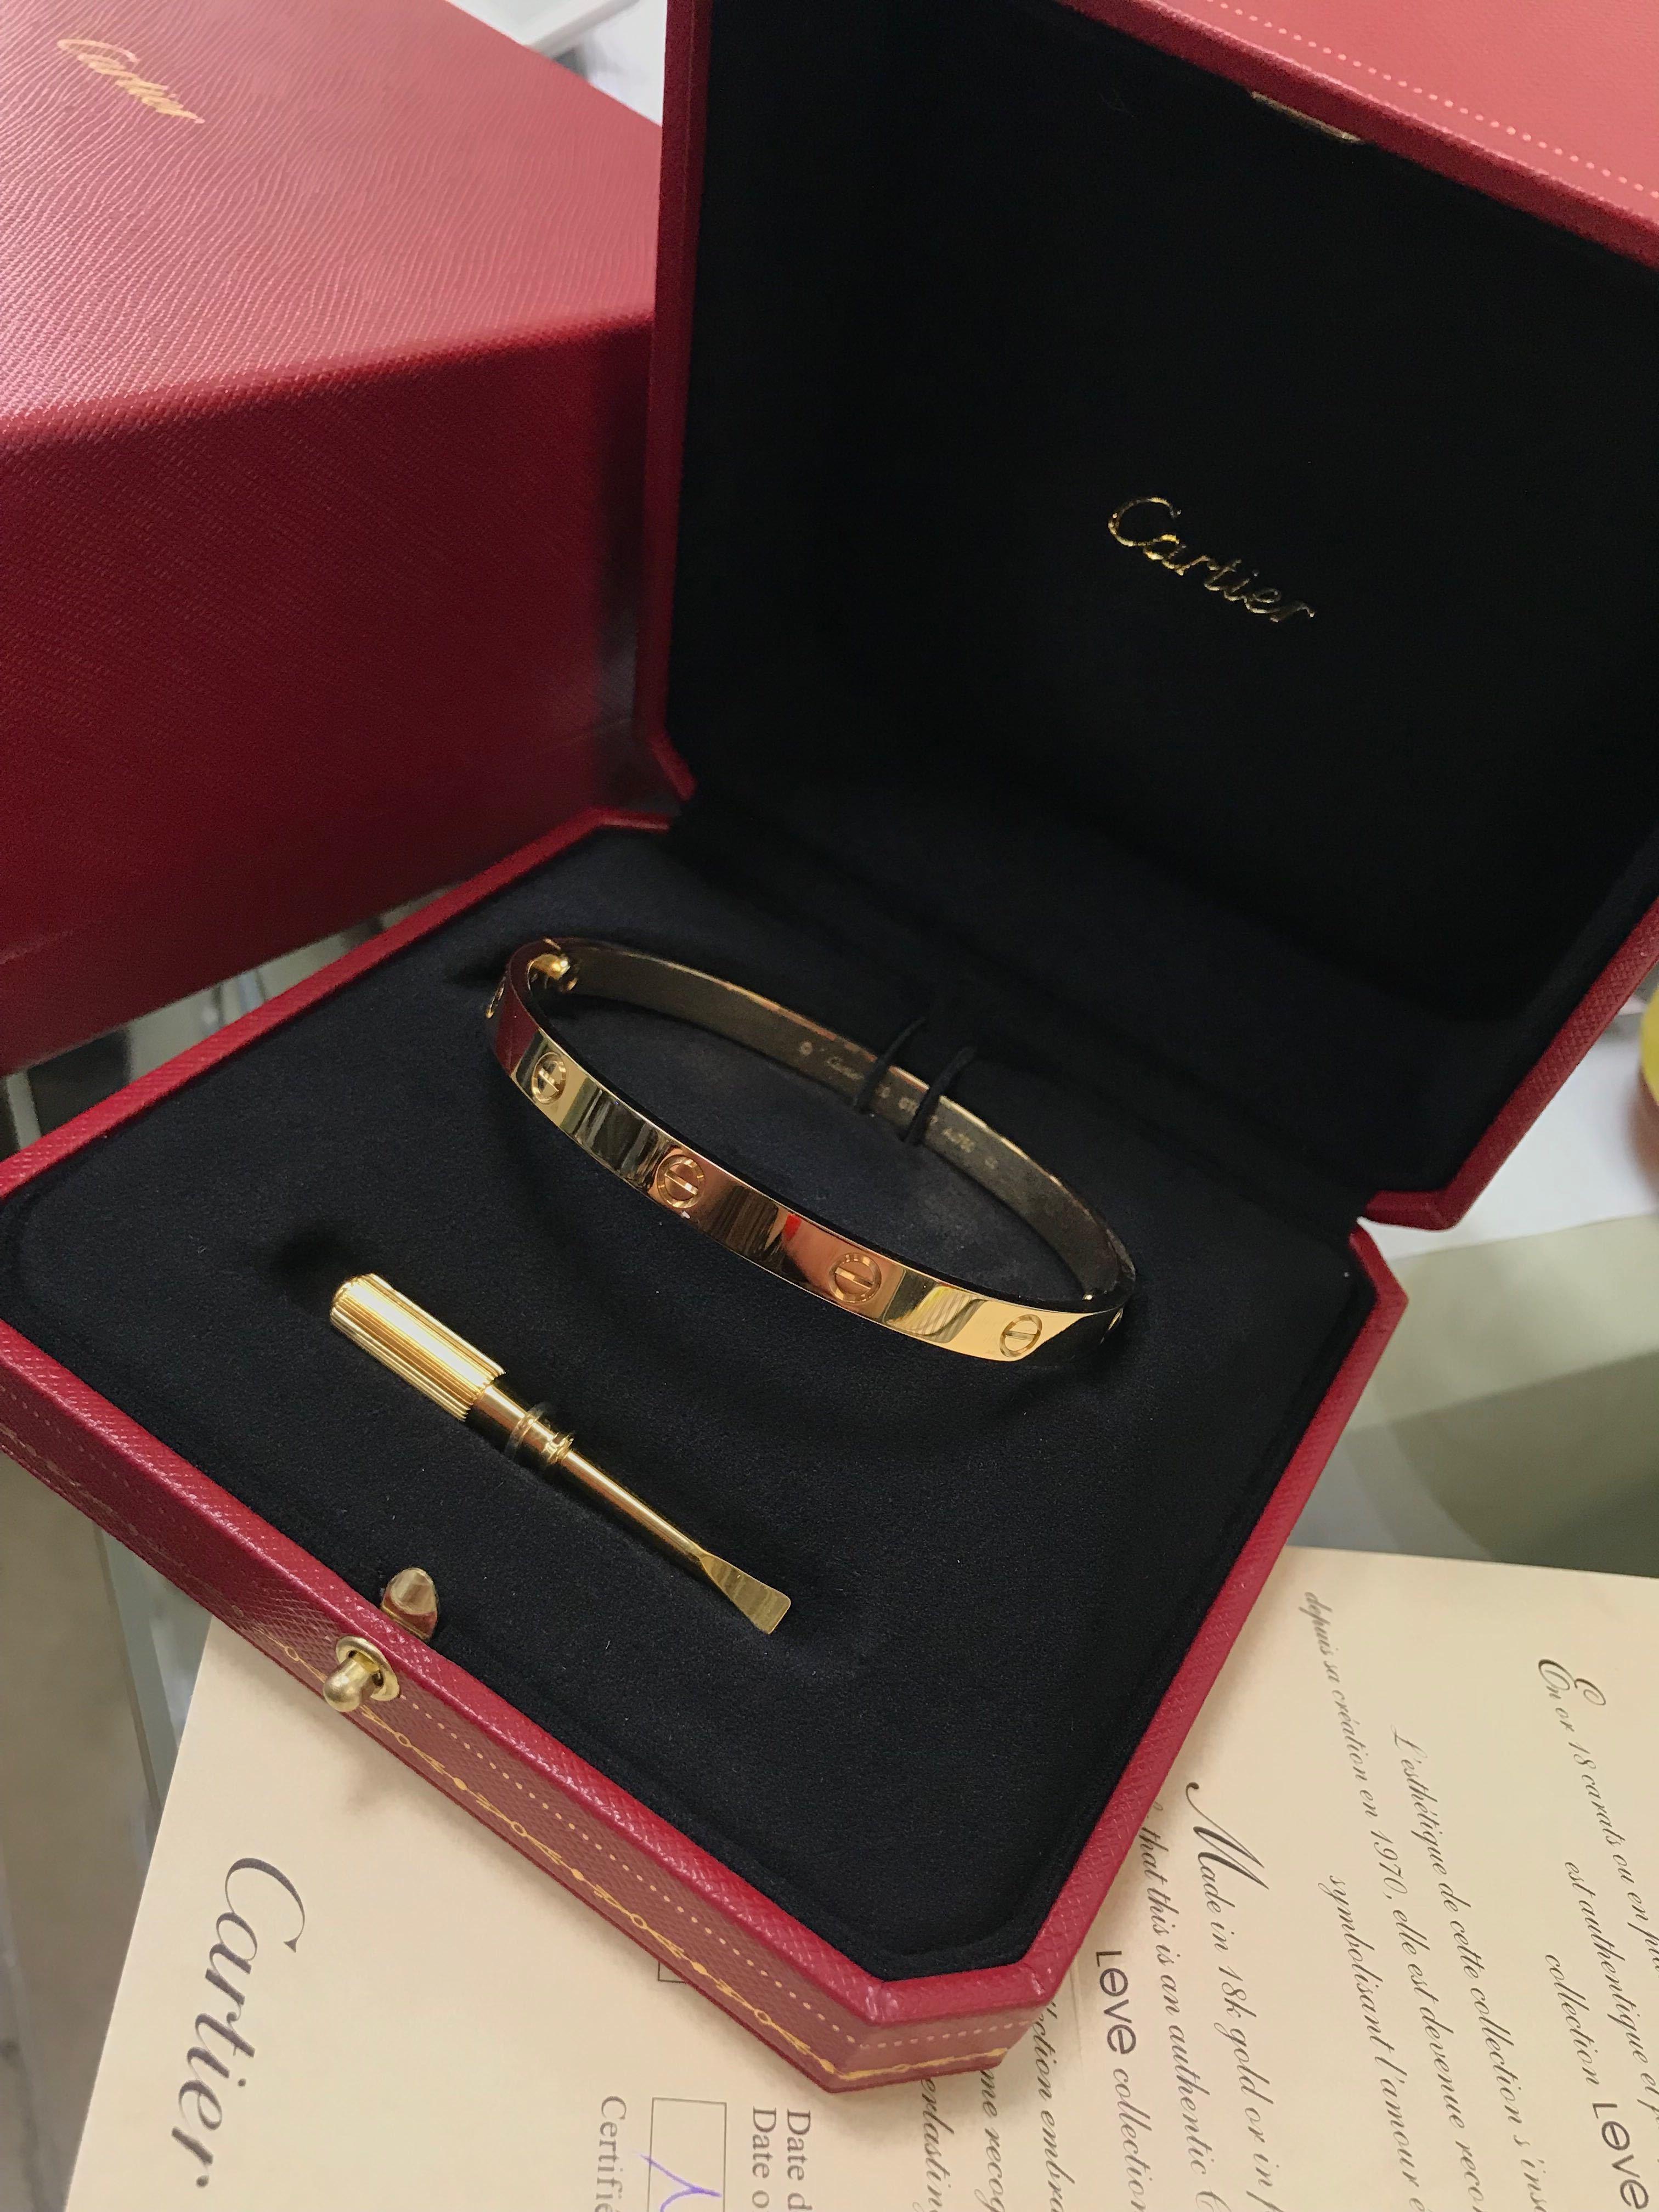 Modern Cartier 18 Karat Yellow Gold Love Bangle Bracelet